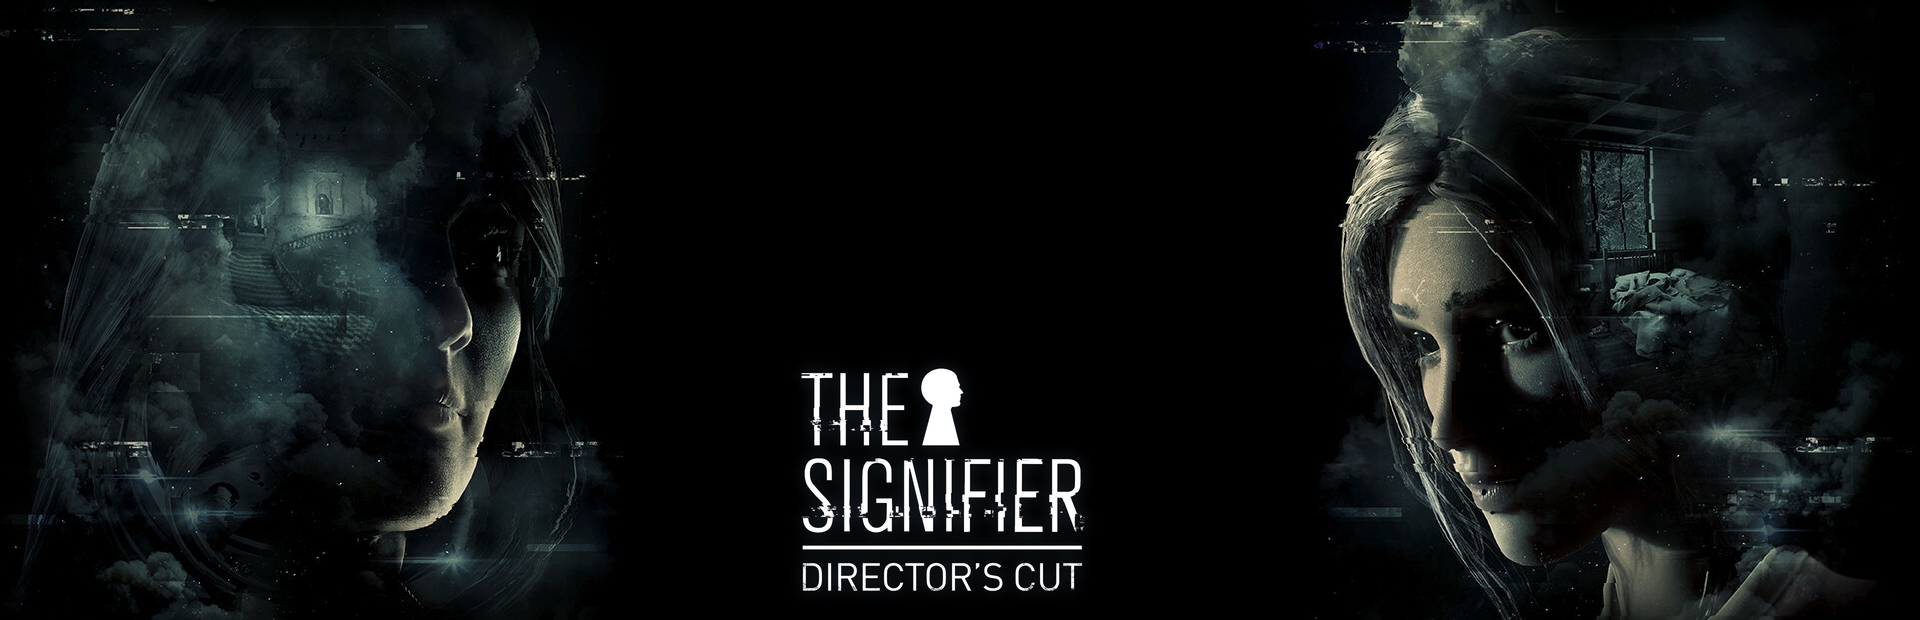 دانلود بازی The Signifier Director's Cut برای پی سی | گیمباتو